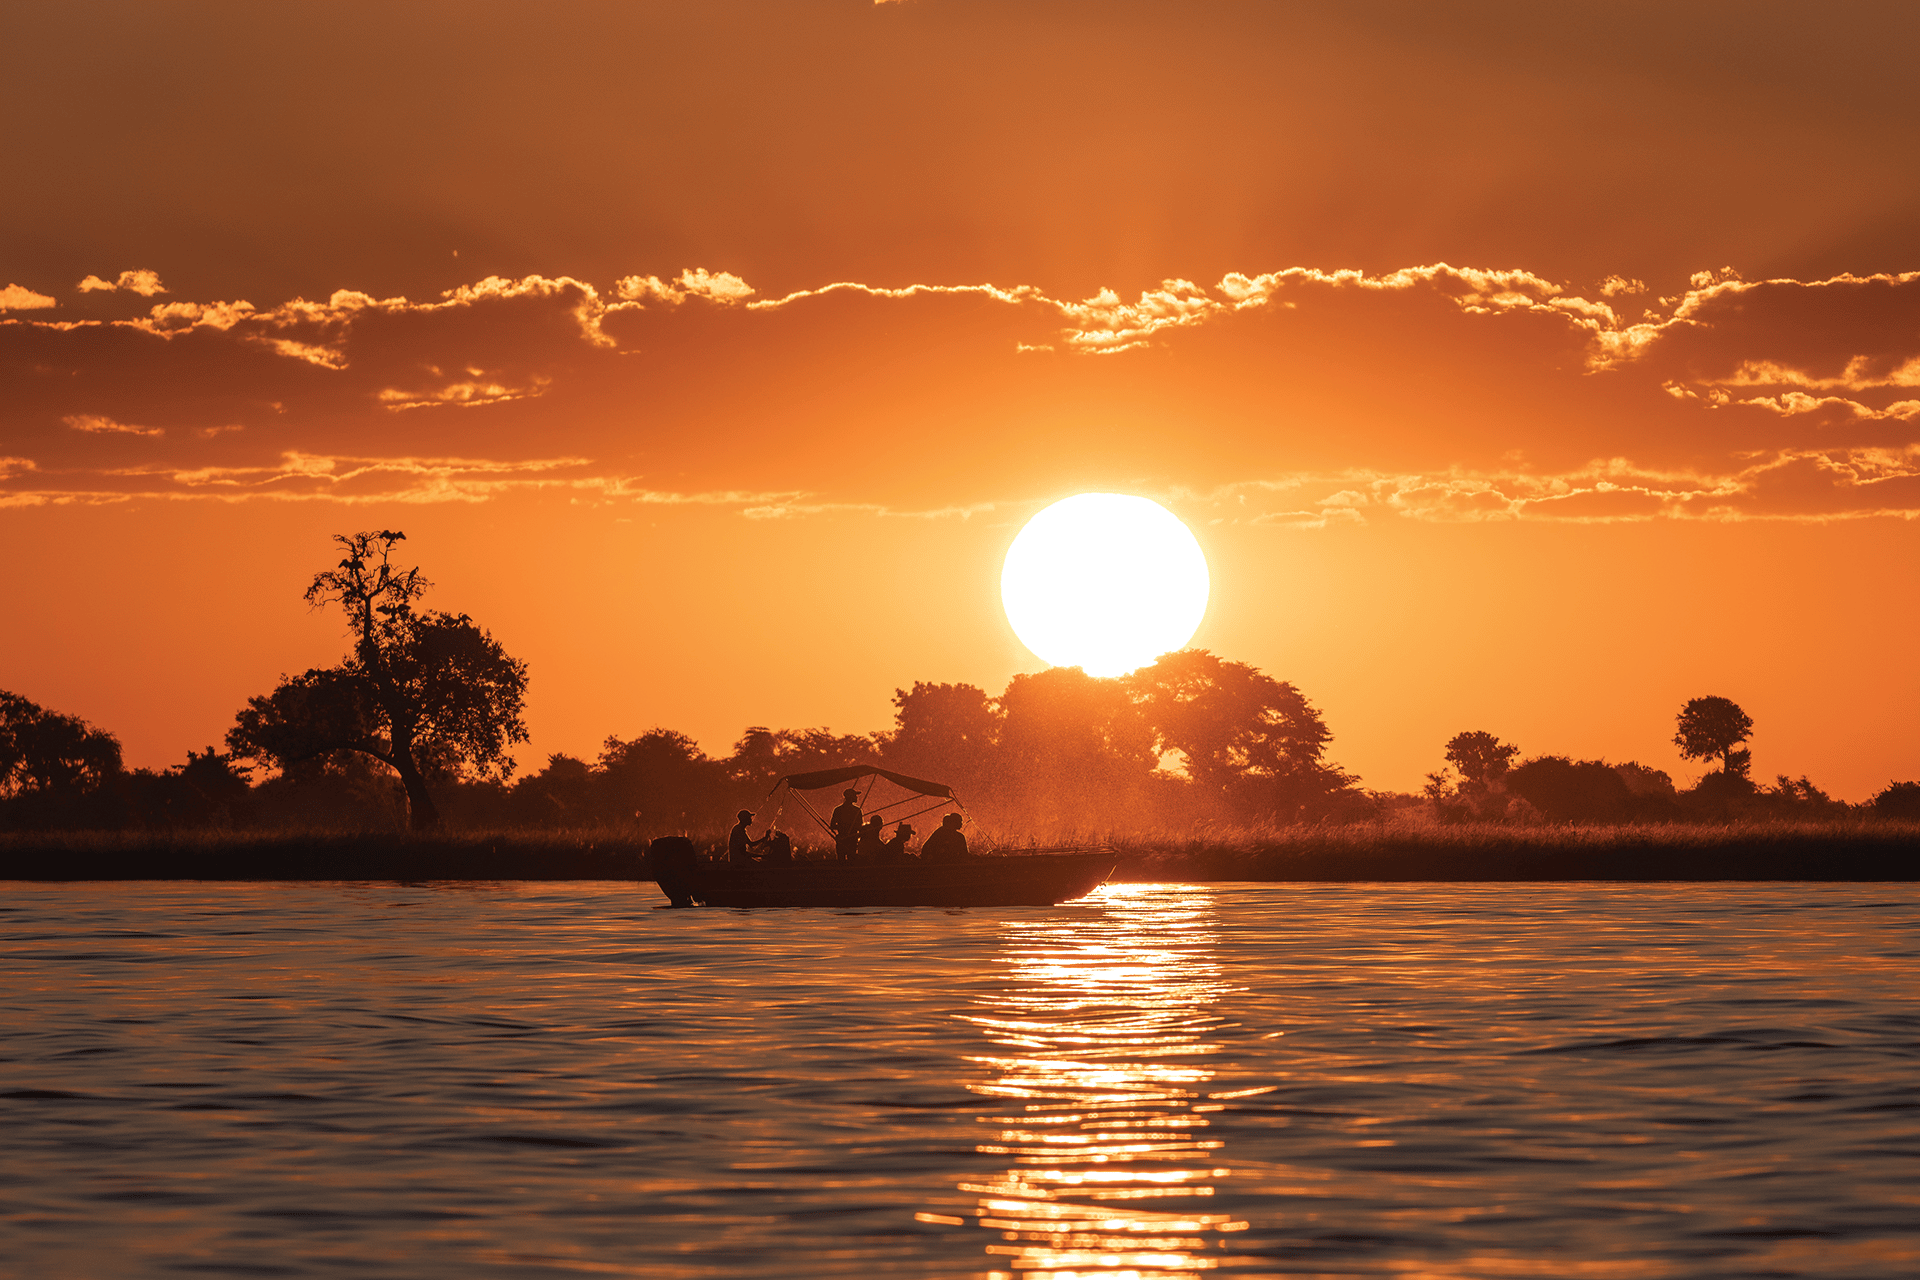 Guests enjoying a sunset Zambezi river cruise at Victoria Falls